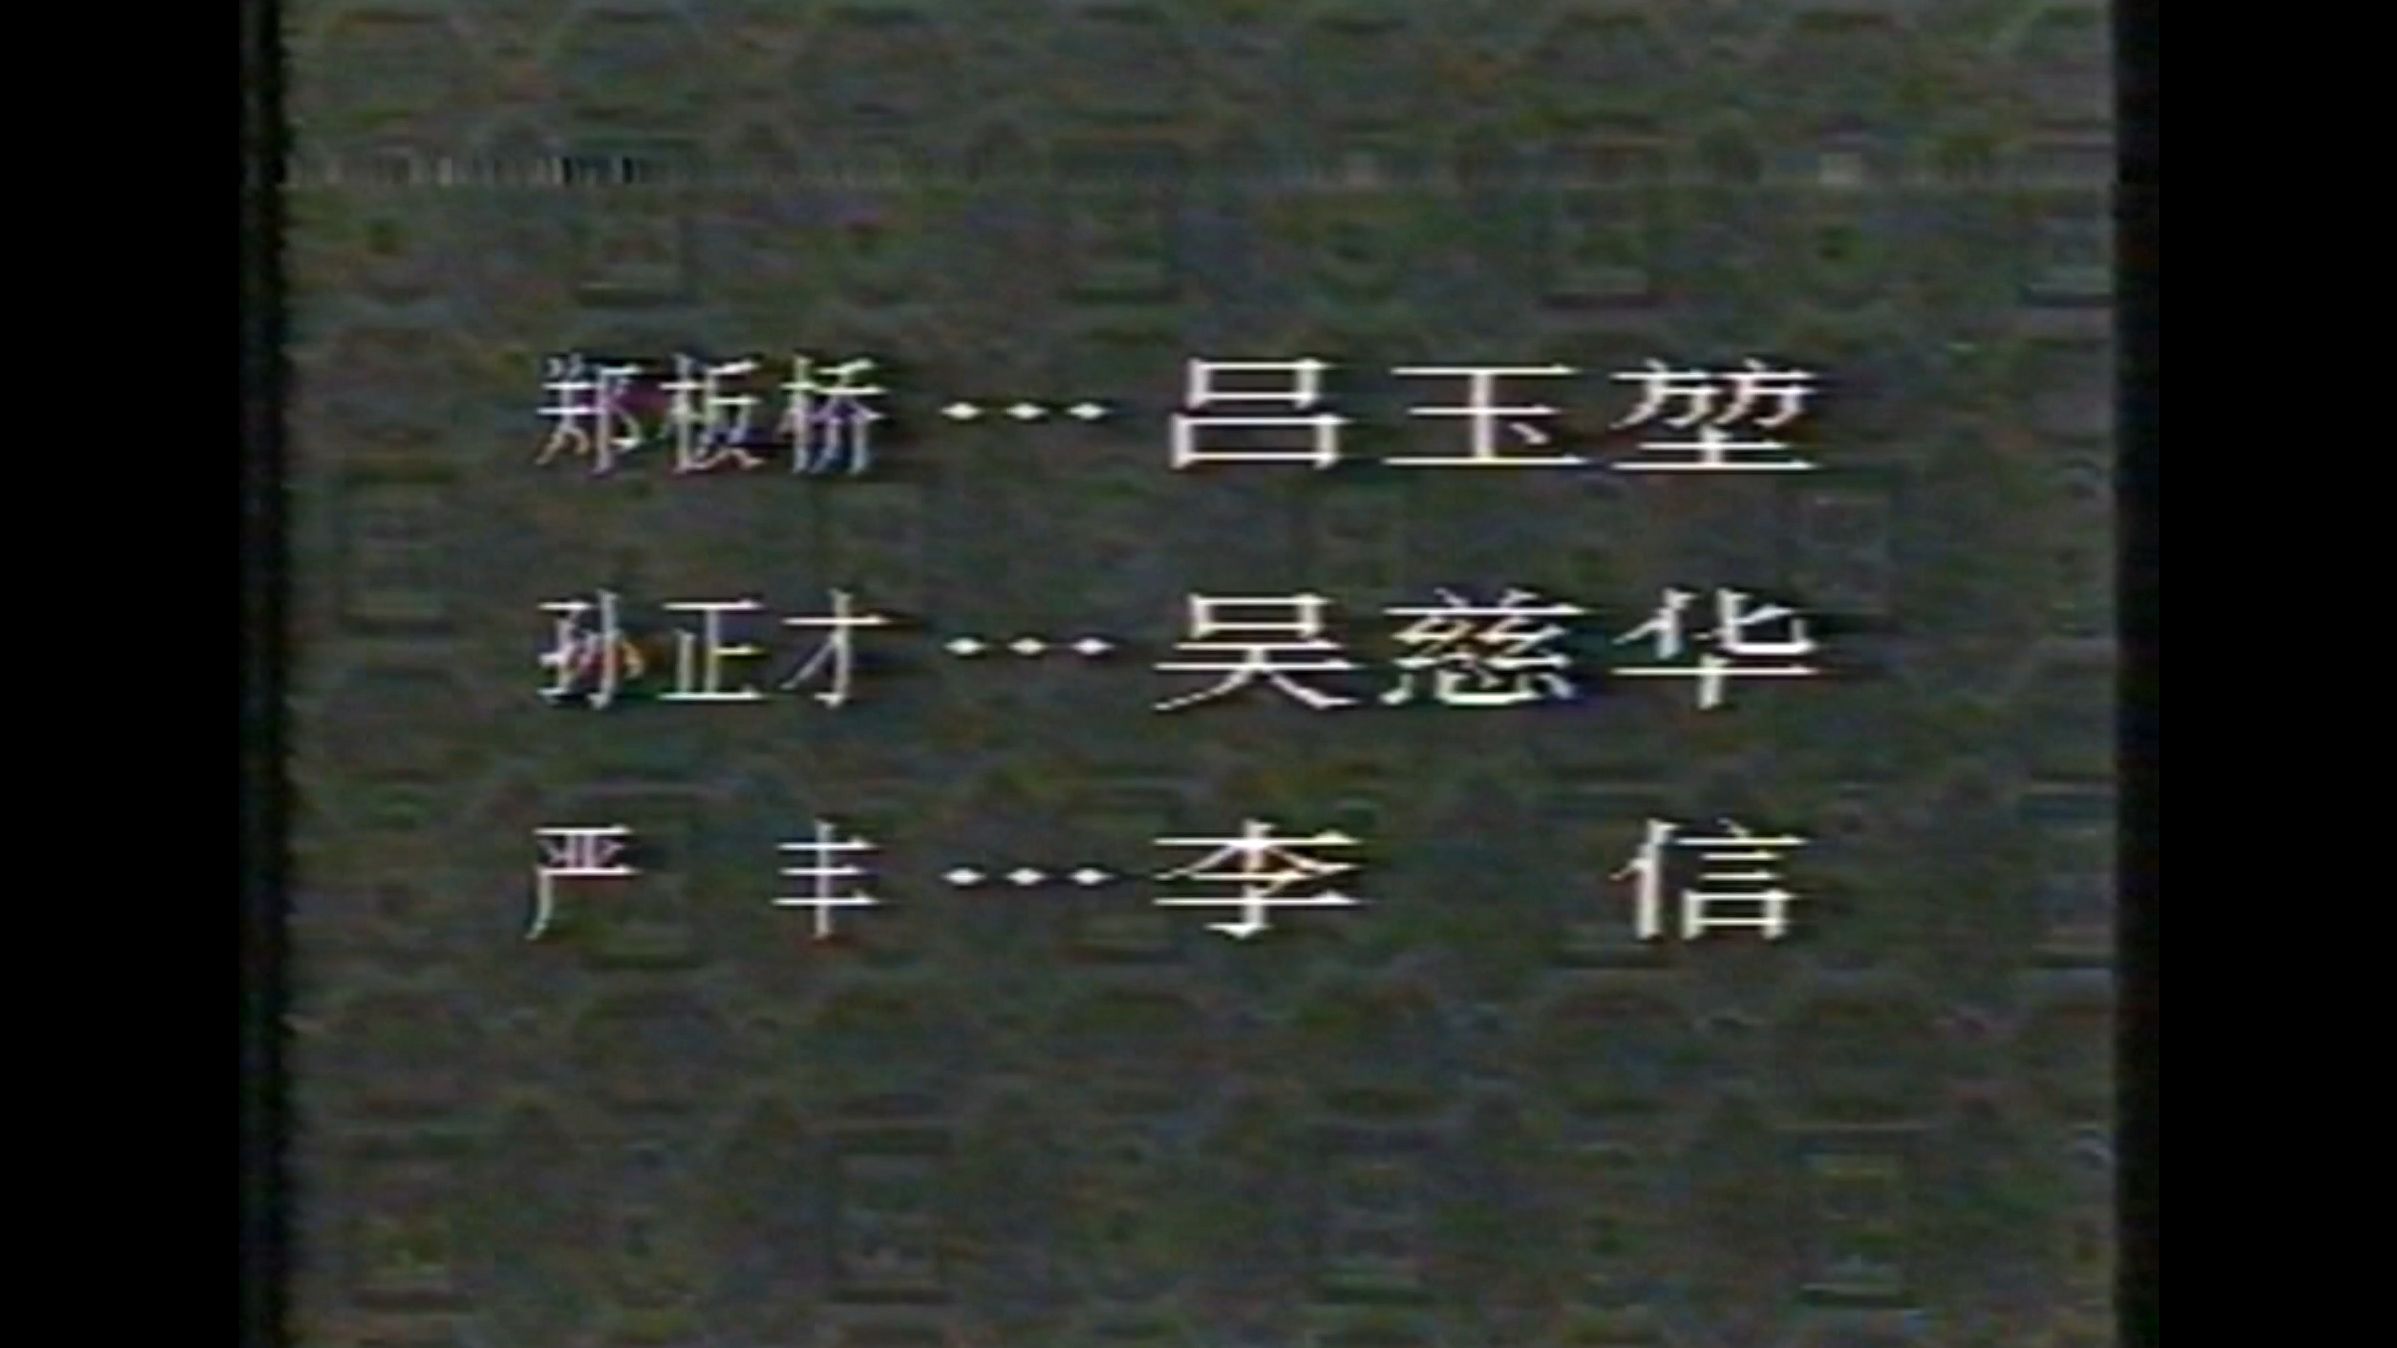 【绝版录像带】1991年电视剧《郑板桥》片段欣赏,吕